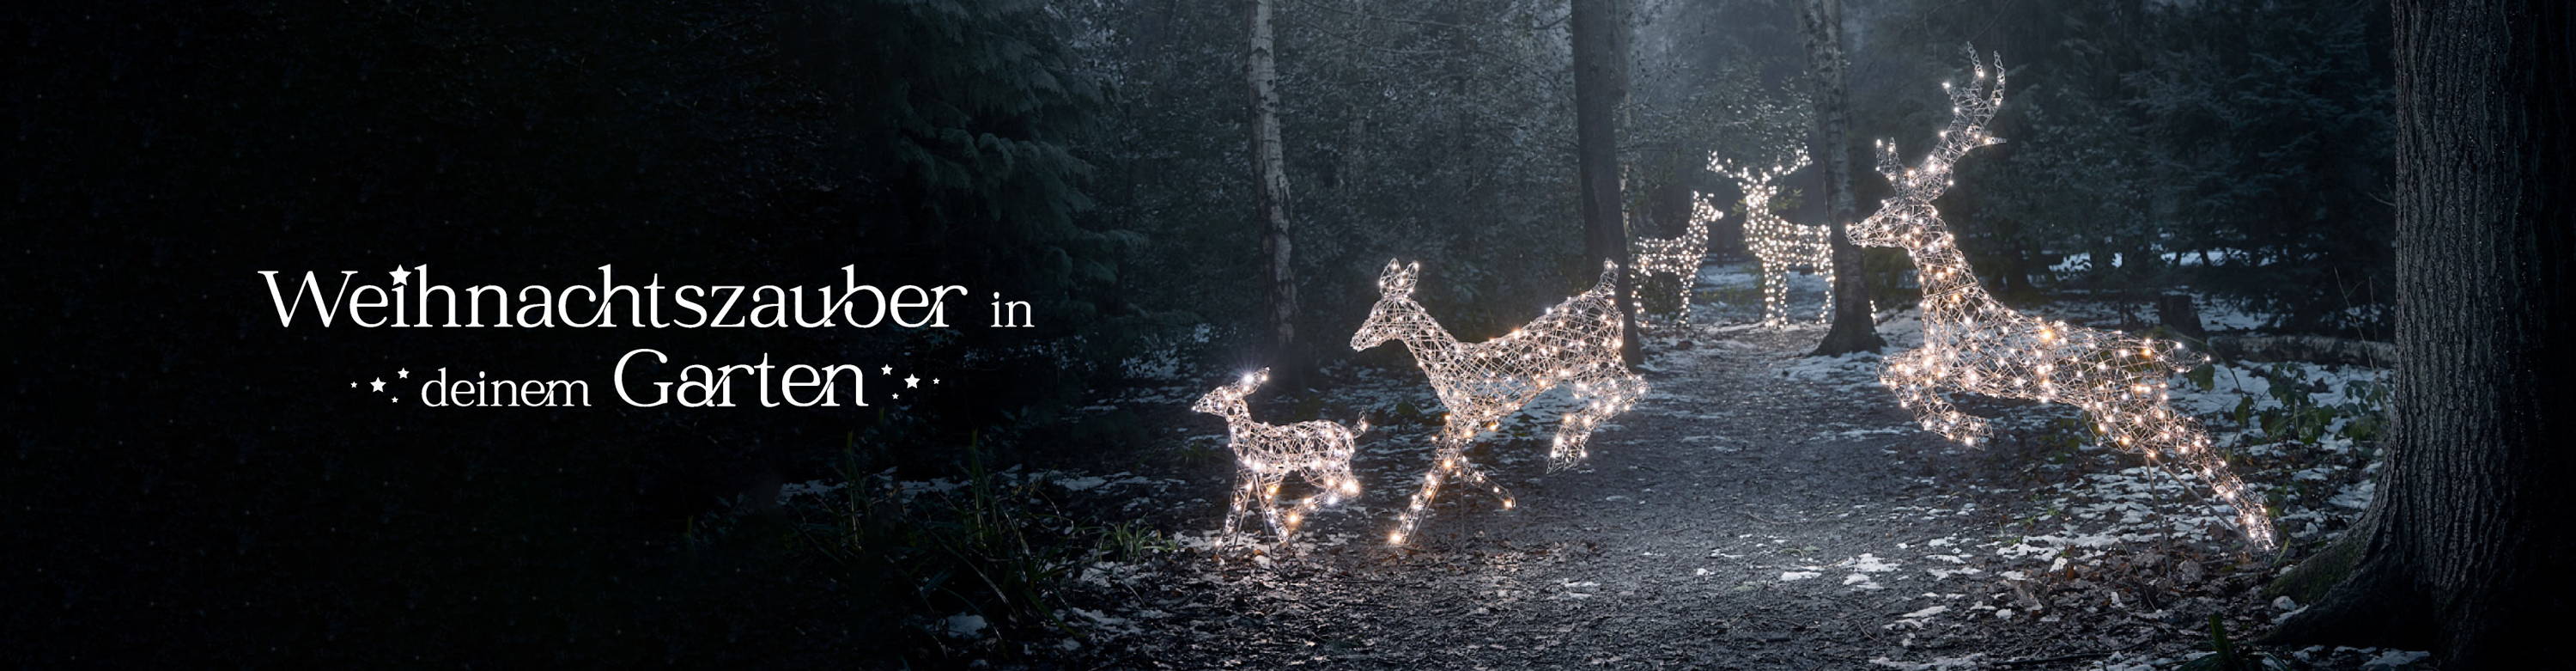 Drei LED Rentiere im Sprung  in einem winterlichen Wald, im Hintergrund zwei stehende Rentiere